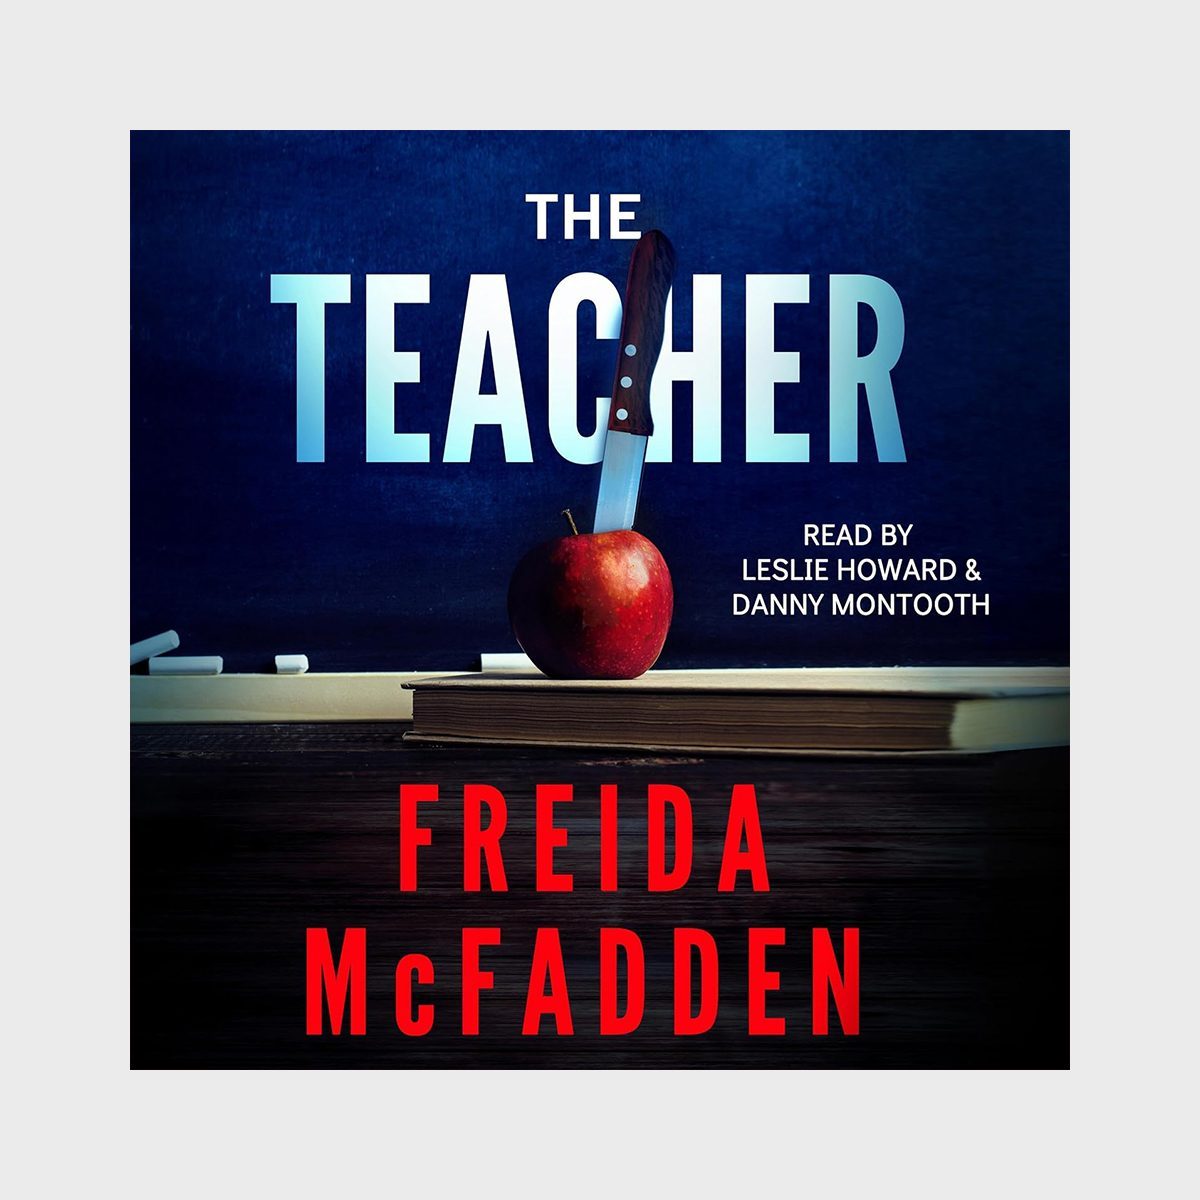 The Teacher By Freida Mcfadden Ecomm Via Amazon.com